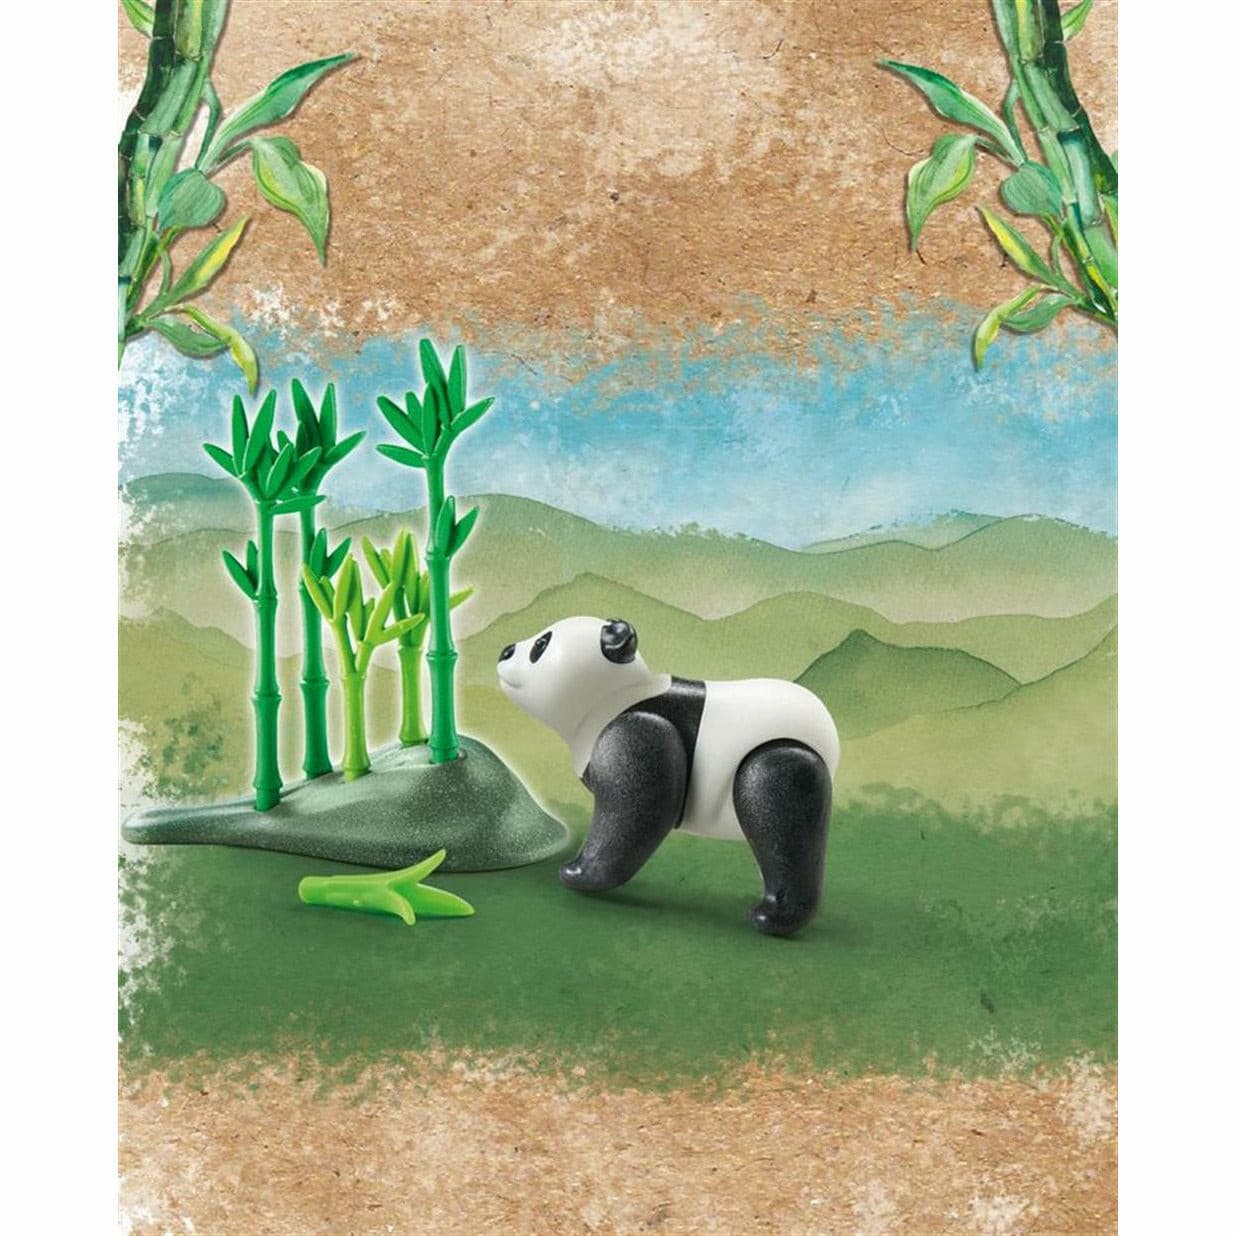 Wiltopia - Panda-Animal Figures-Playmobil-Yes Bebe